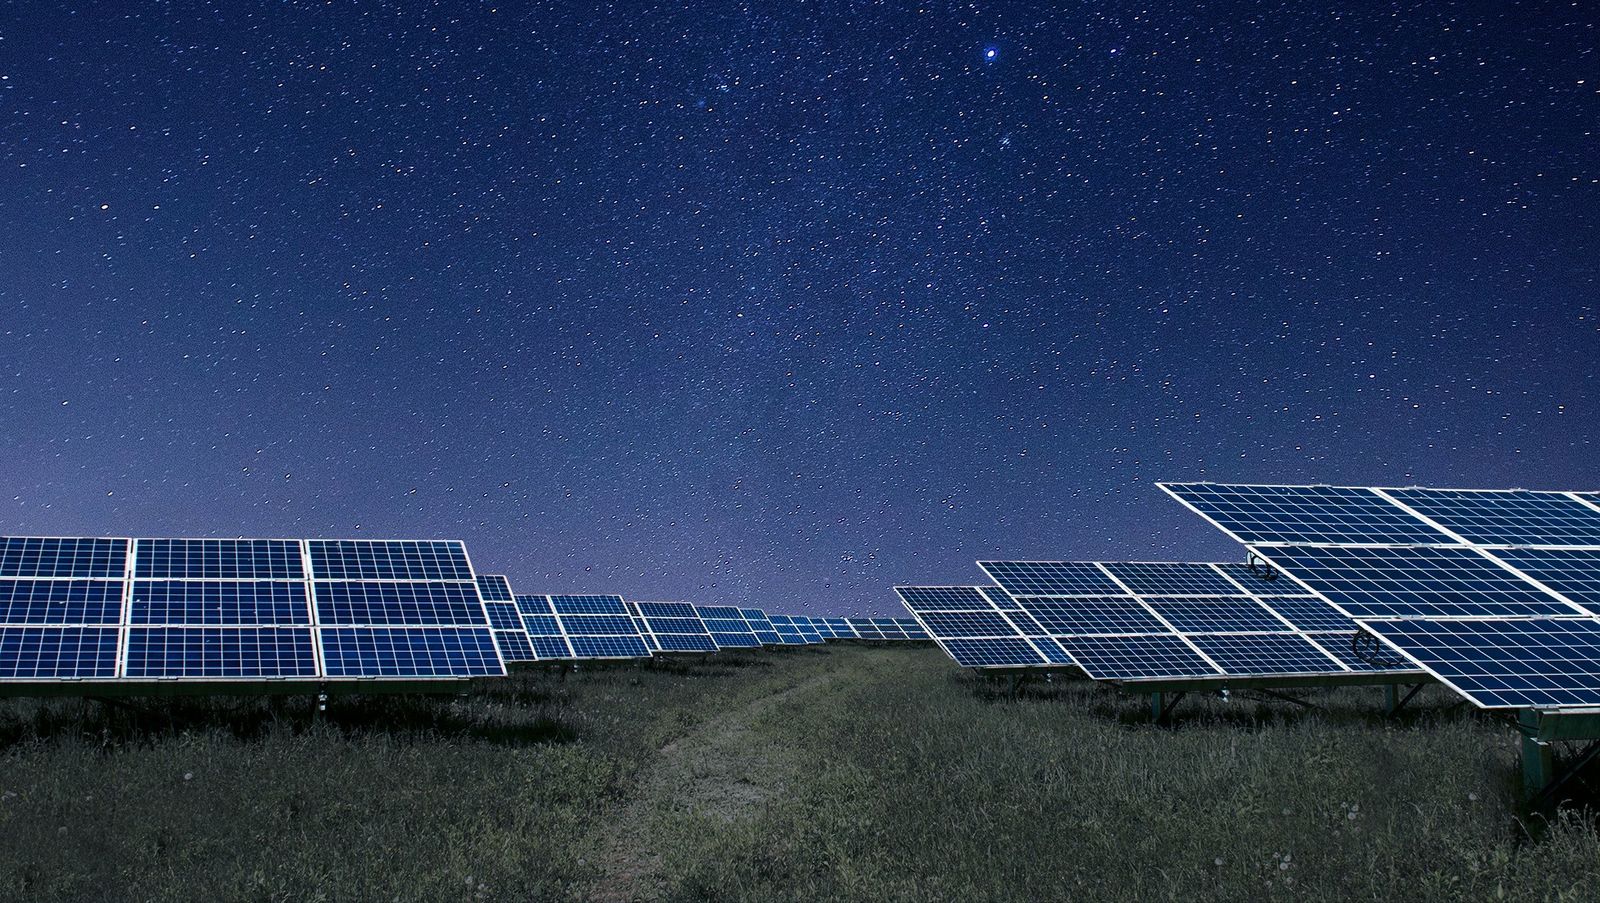 Стэнфордын судлаачид нарны хавтанг шөнийн цагаар эрчим хүч үйлдвэрлэдэг болгожээ DNN.mn